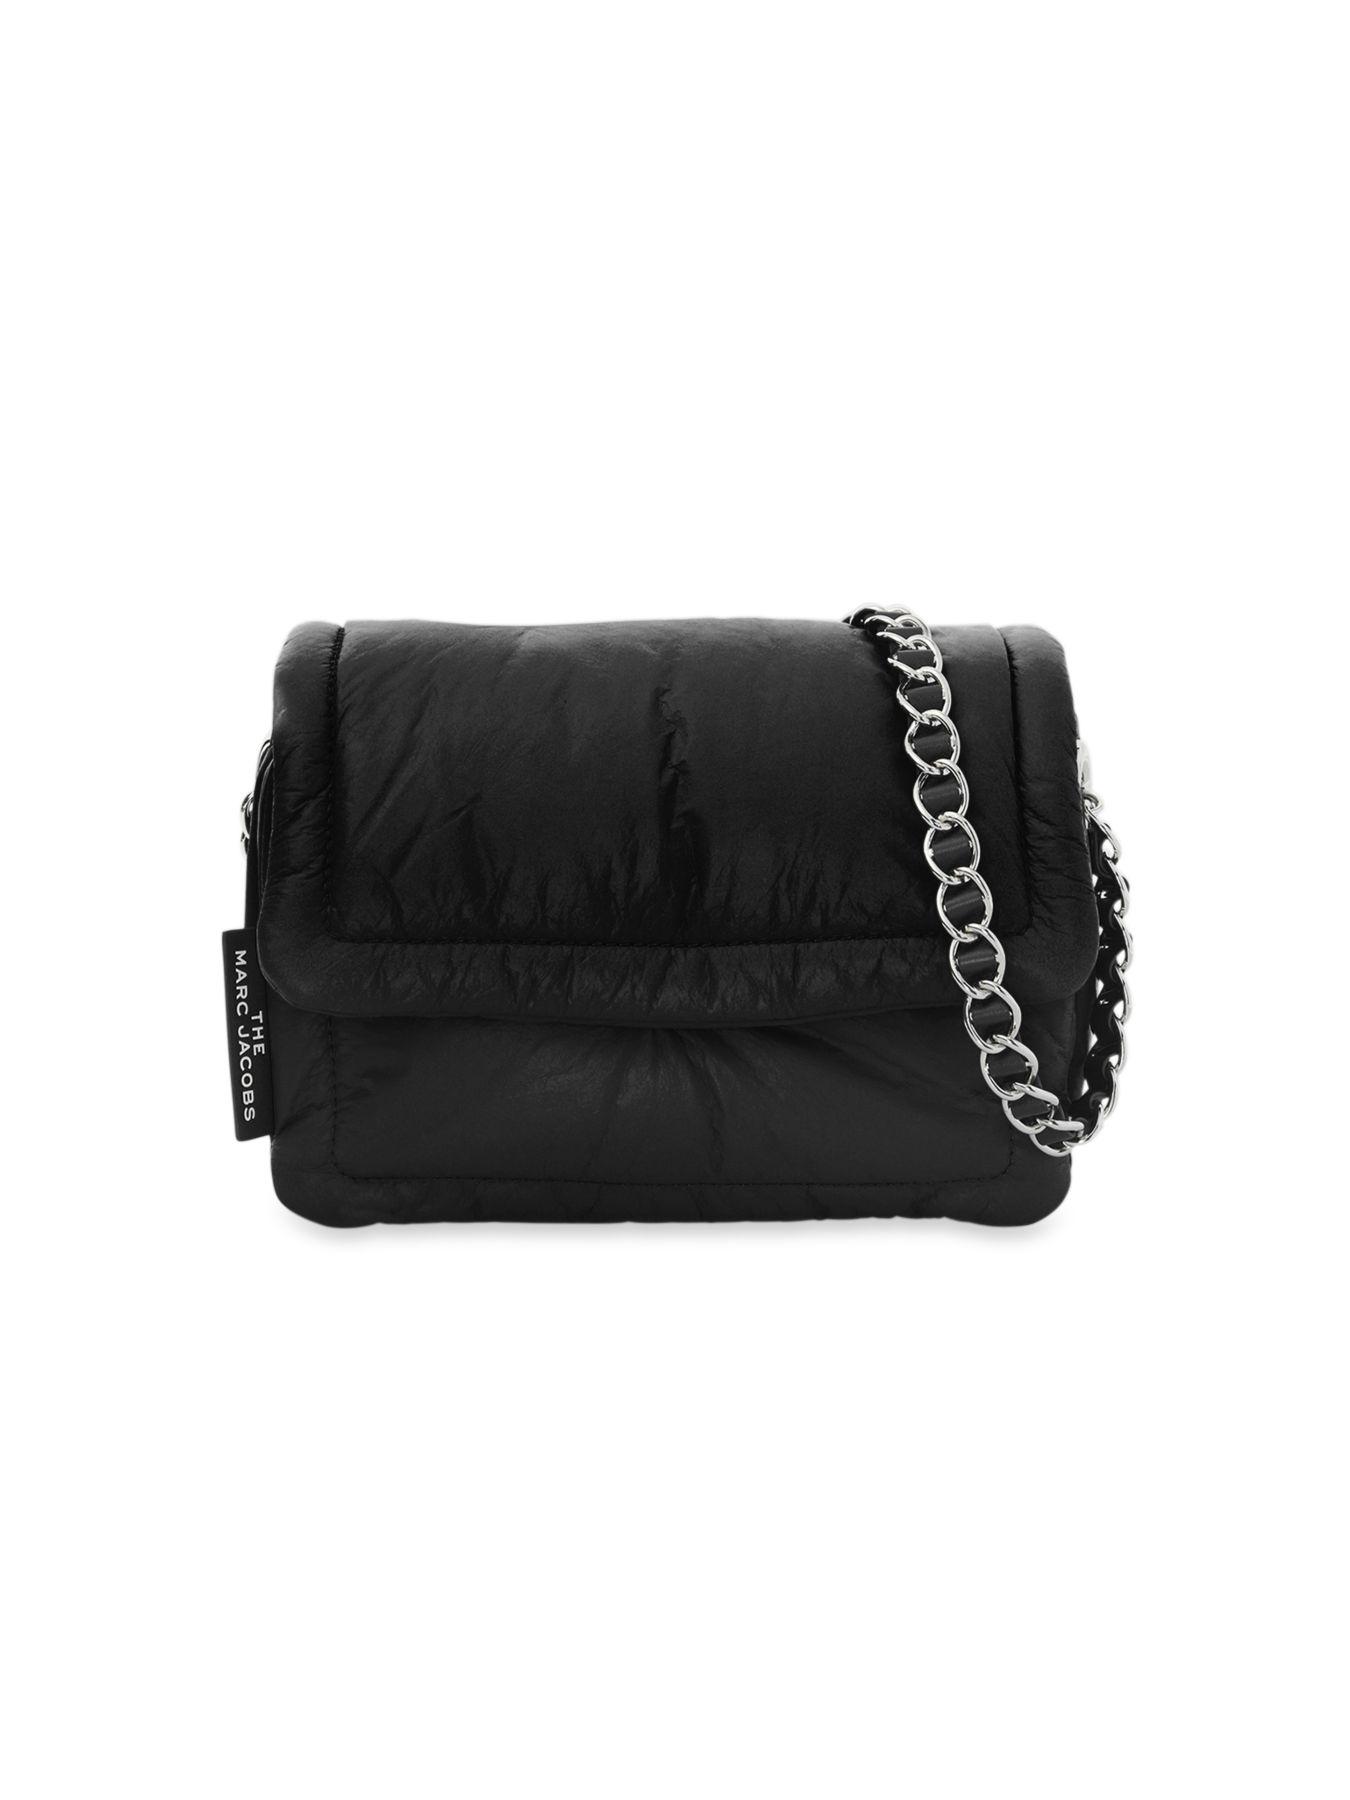 MARC JACOBS Calfskin The Mini Cushion Bag Black 1183741